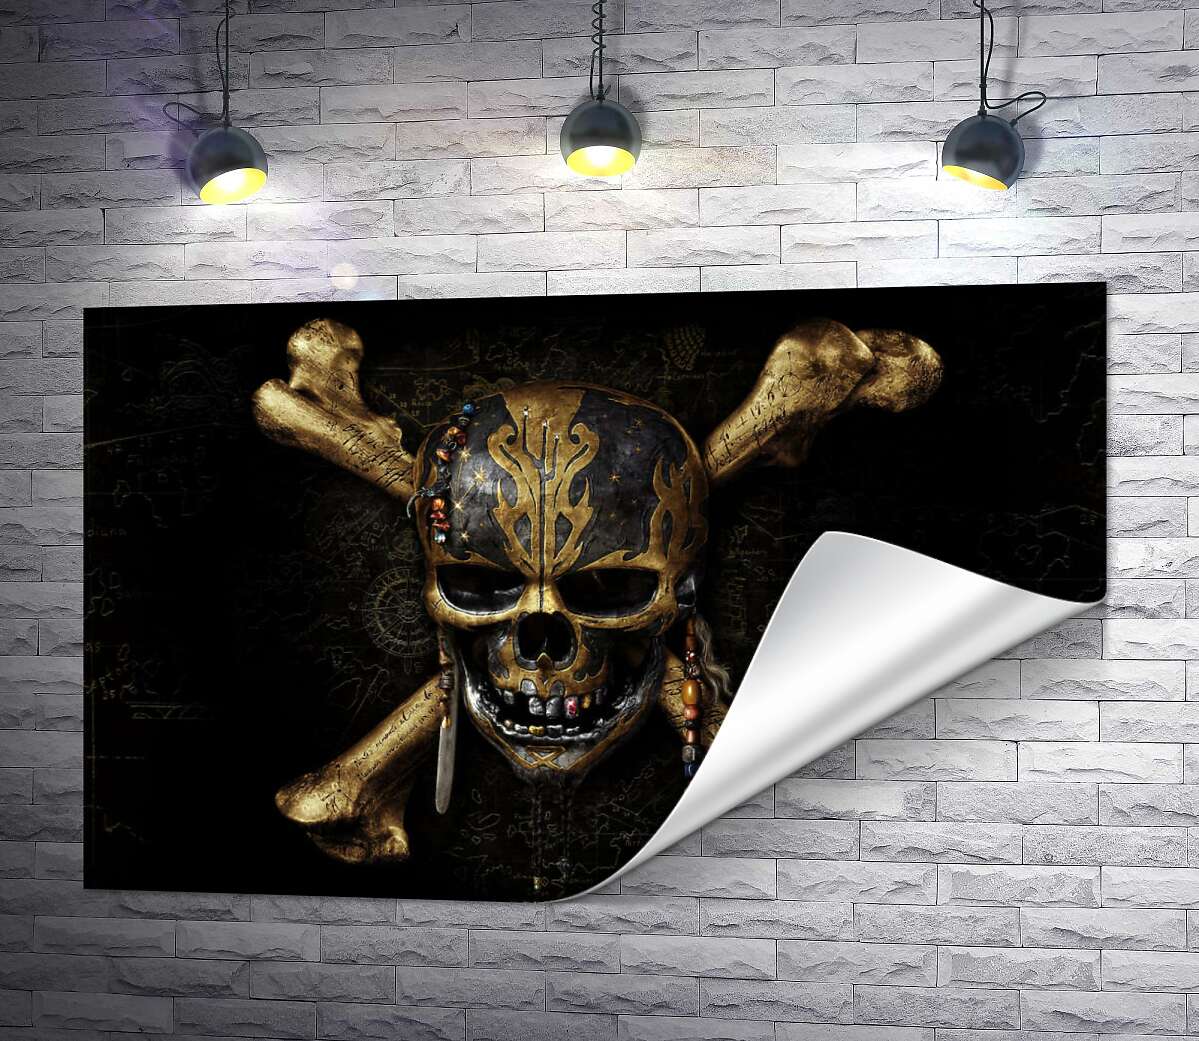 друк Череп пірата на постері до фільму "Пірати Карибського моря: Помста Салазара" (Pitates of the Caribbean: Dead Men Tell No Tales)